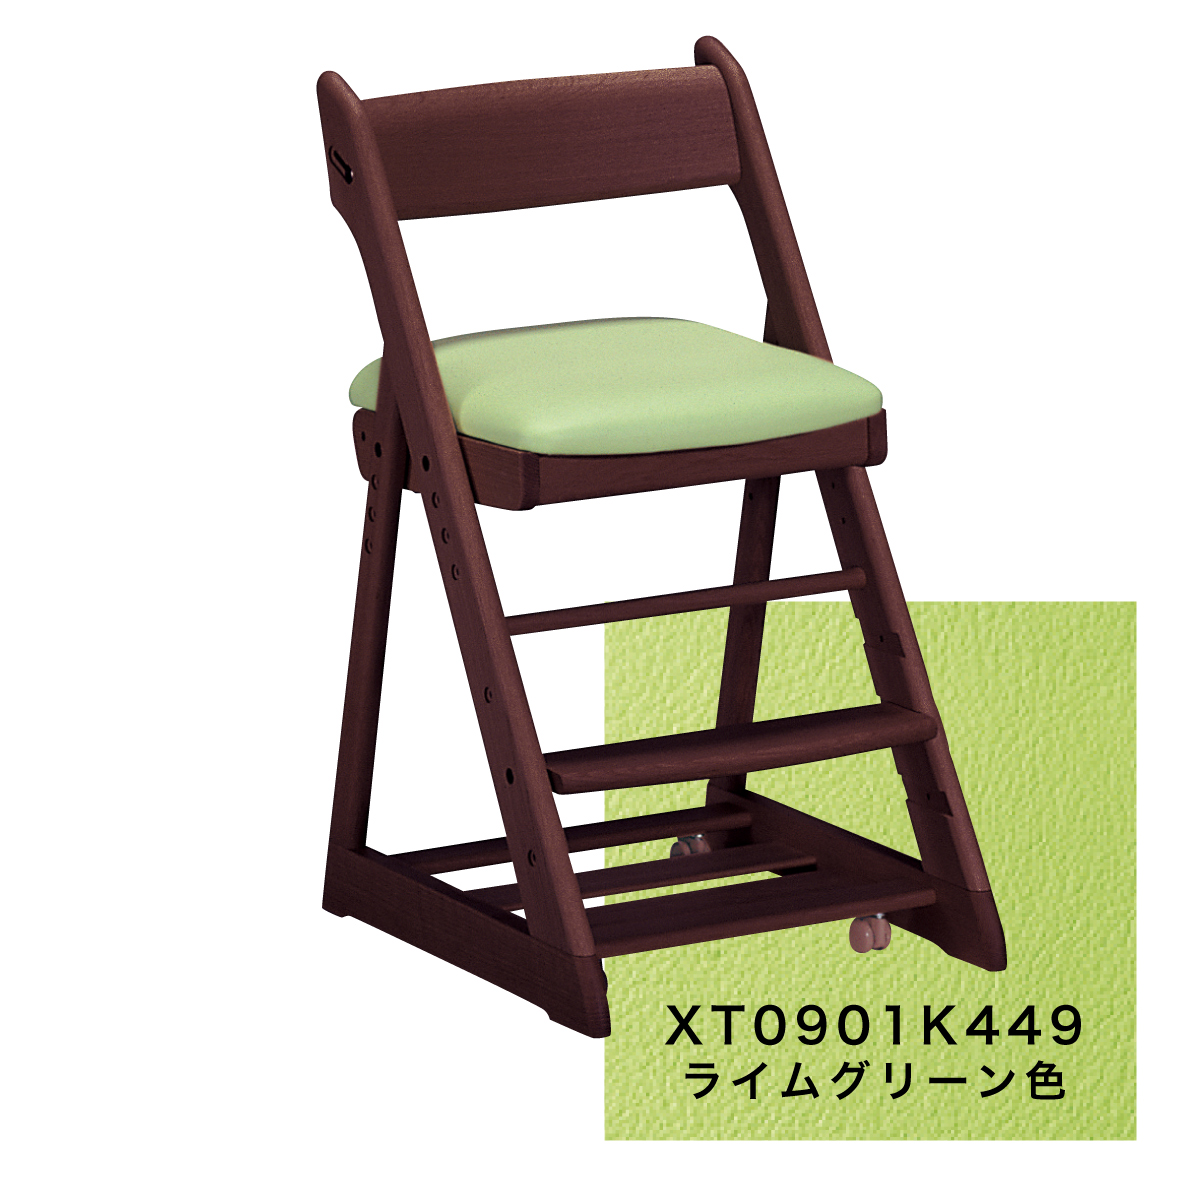 カリモク 学習椅子 木製 XT0901 モカブラウン色 オーク材 デスクチェア 